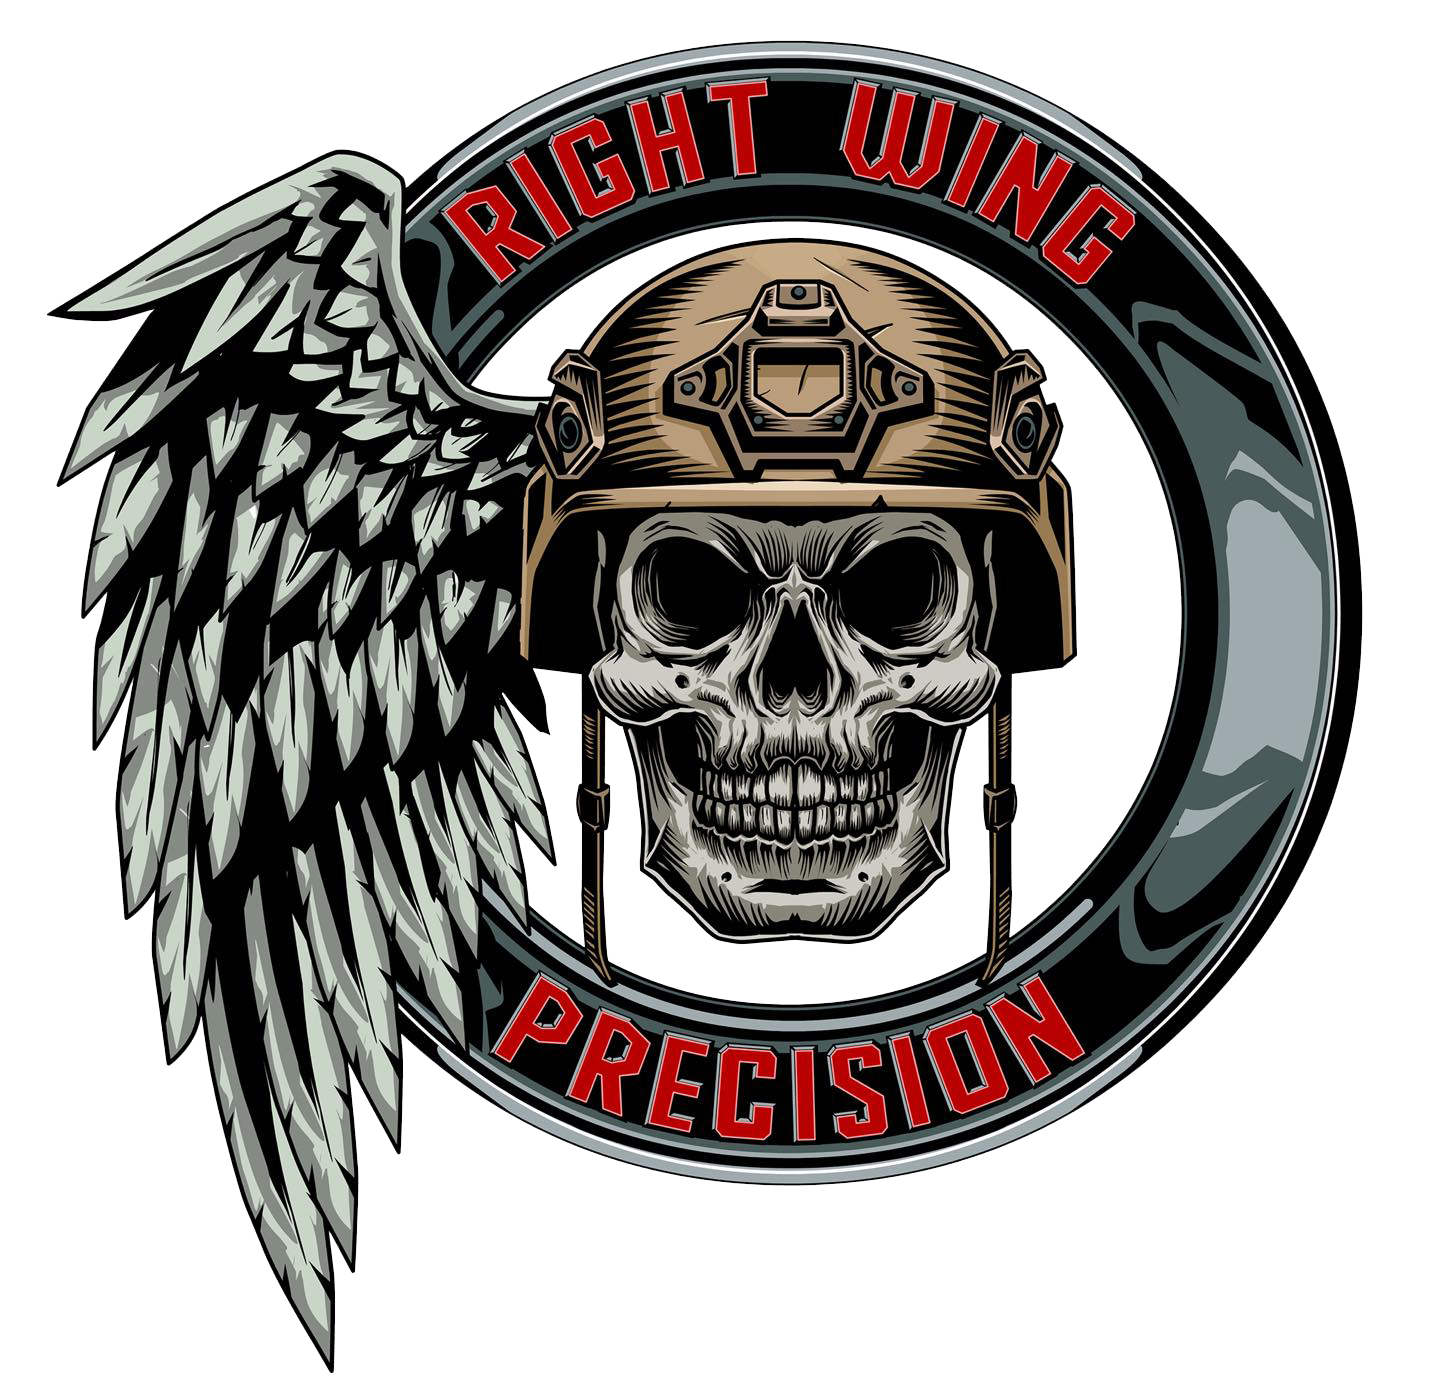 Right Wing Precision